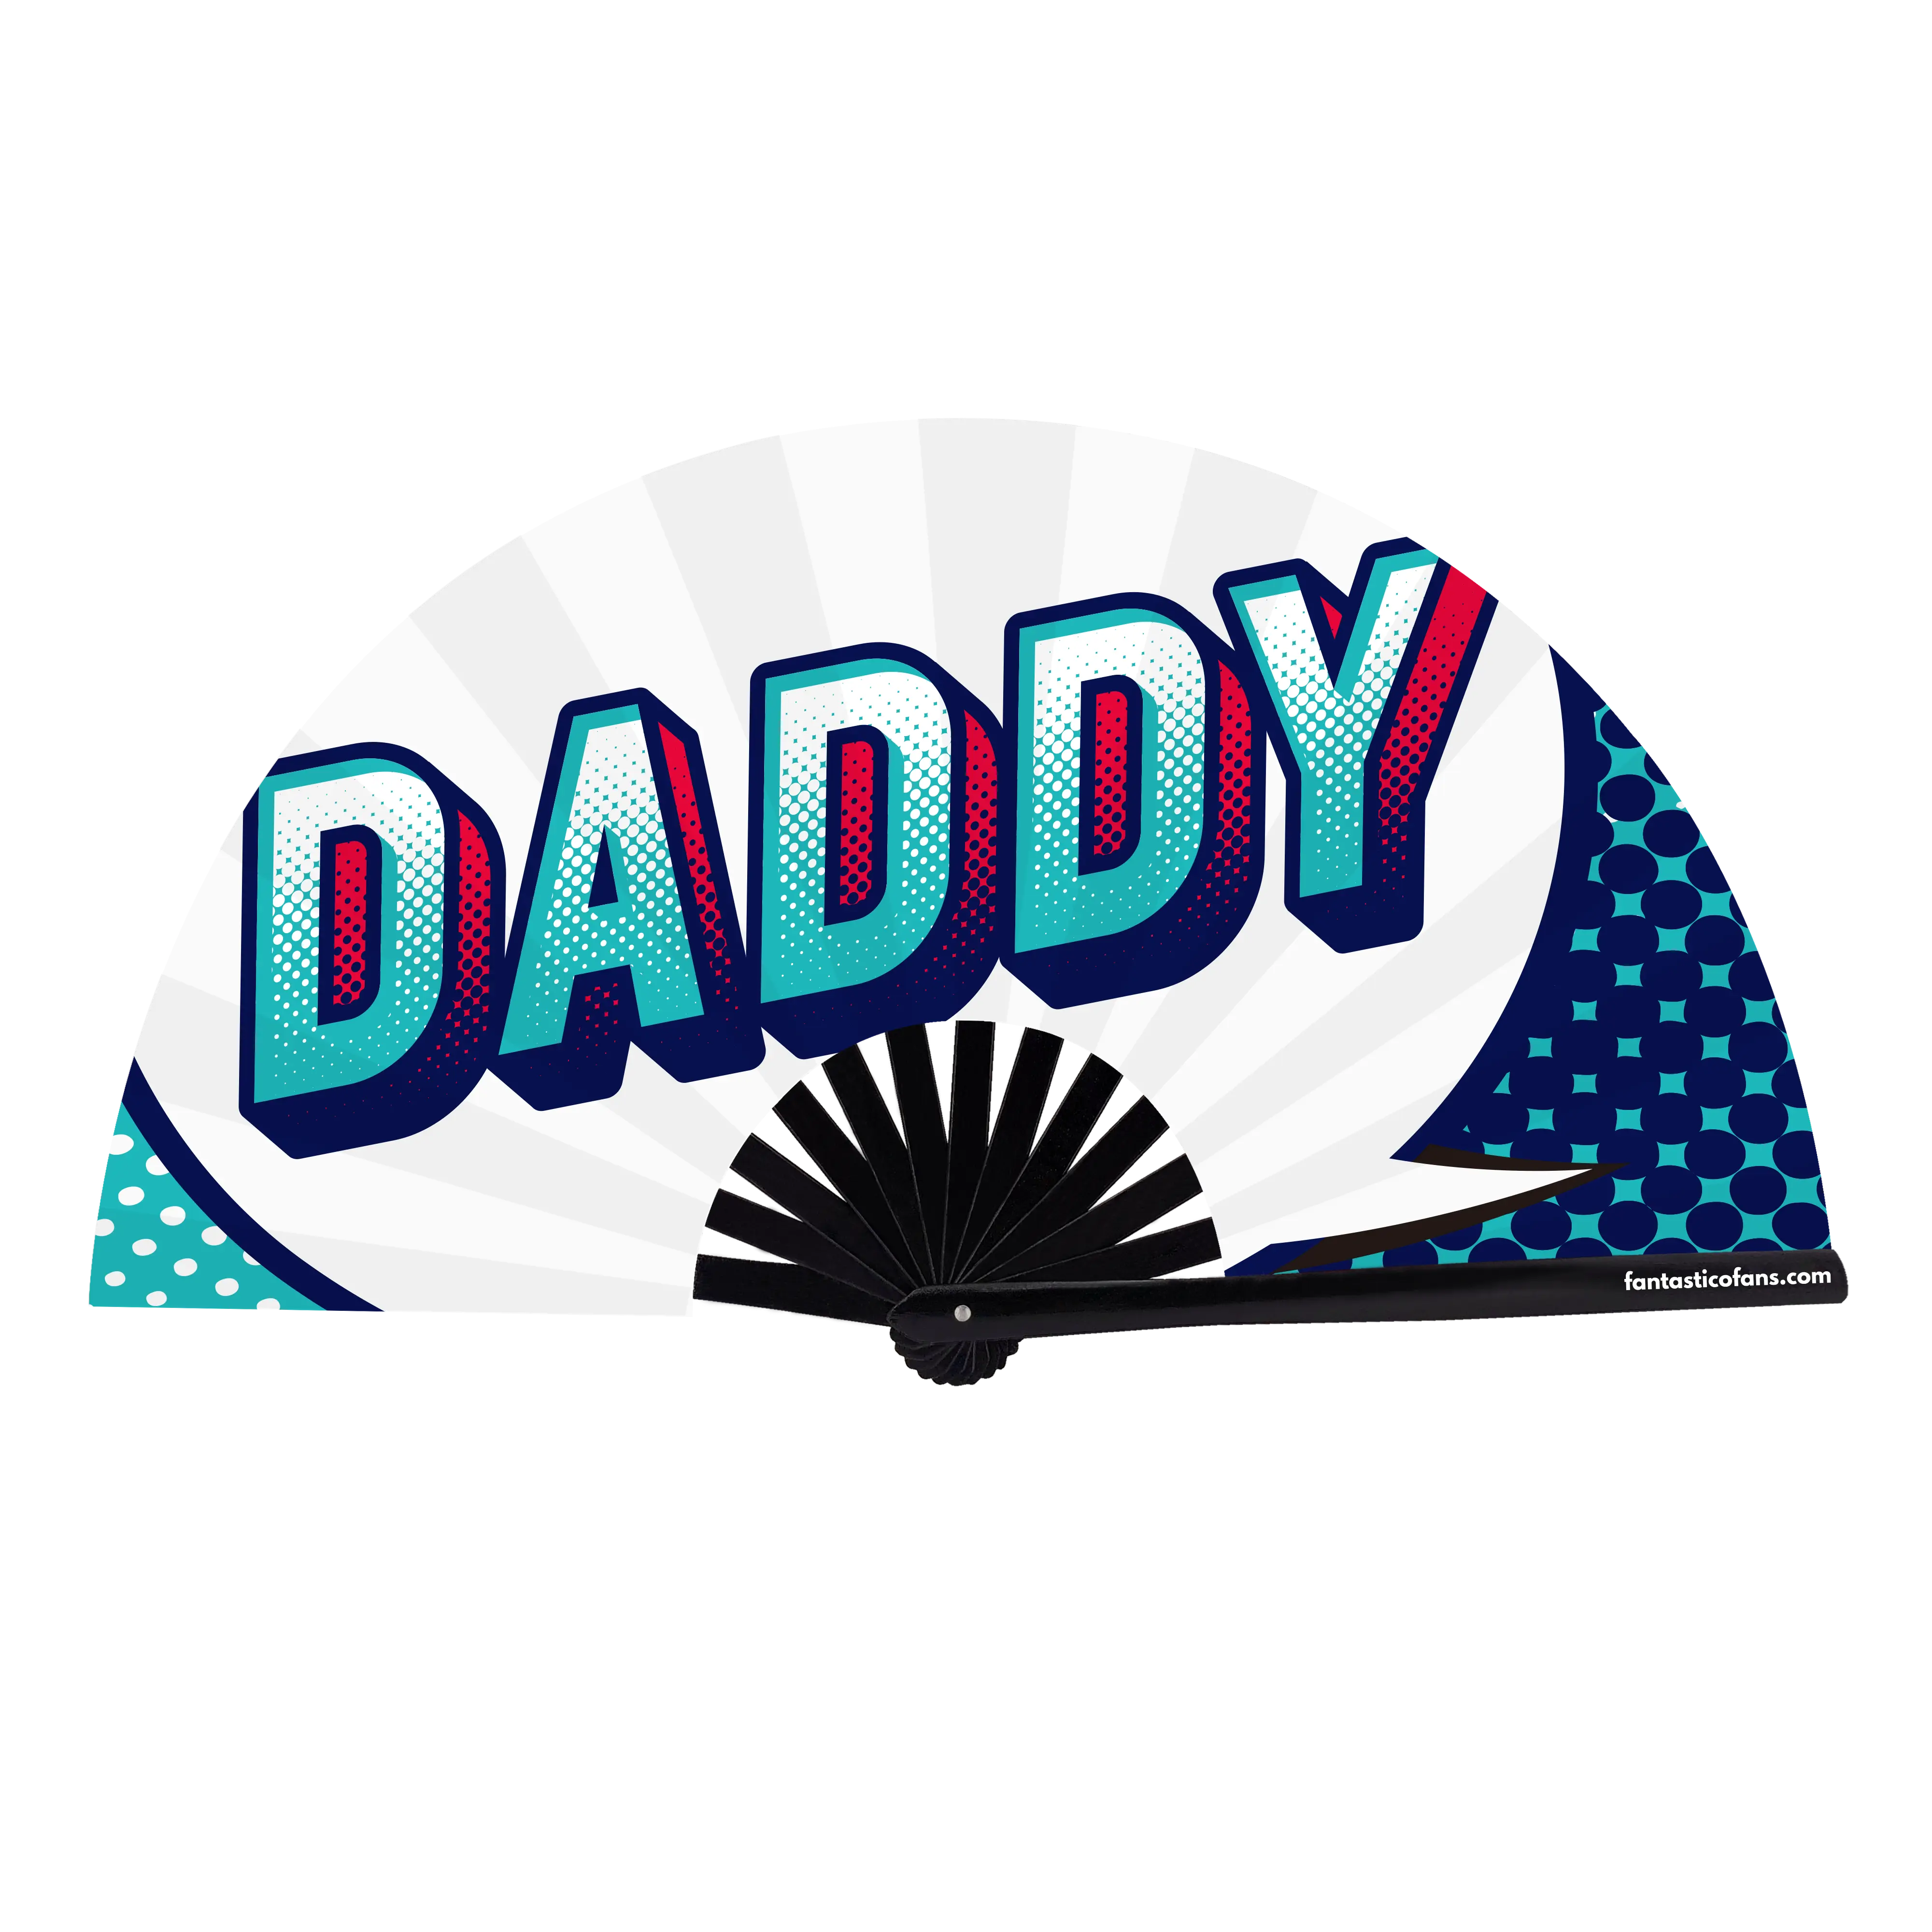 Daddy XL Fan Fantastico Fans